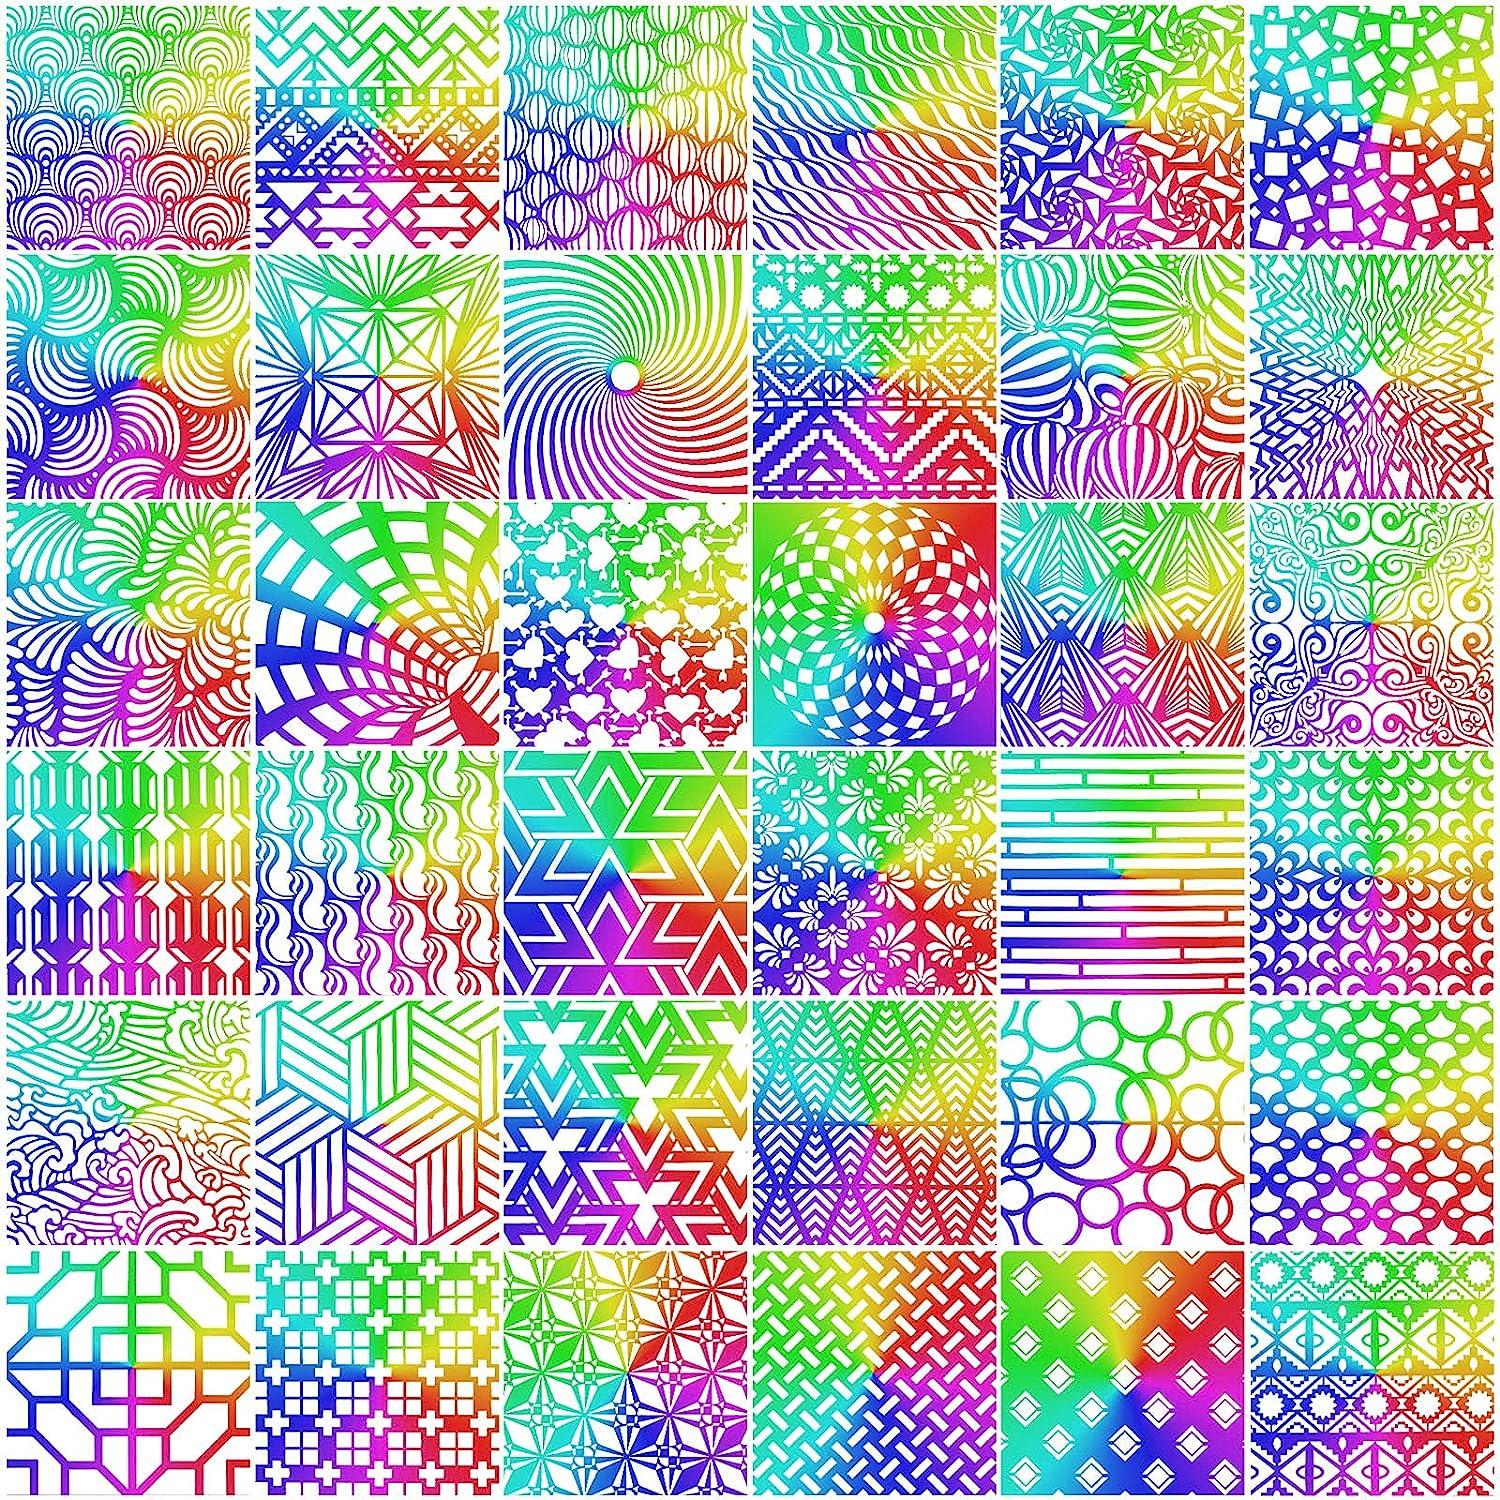 Geometric stencils, templates, pattern